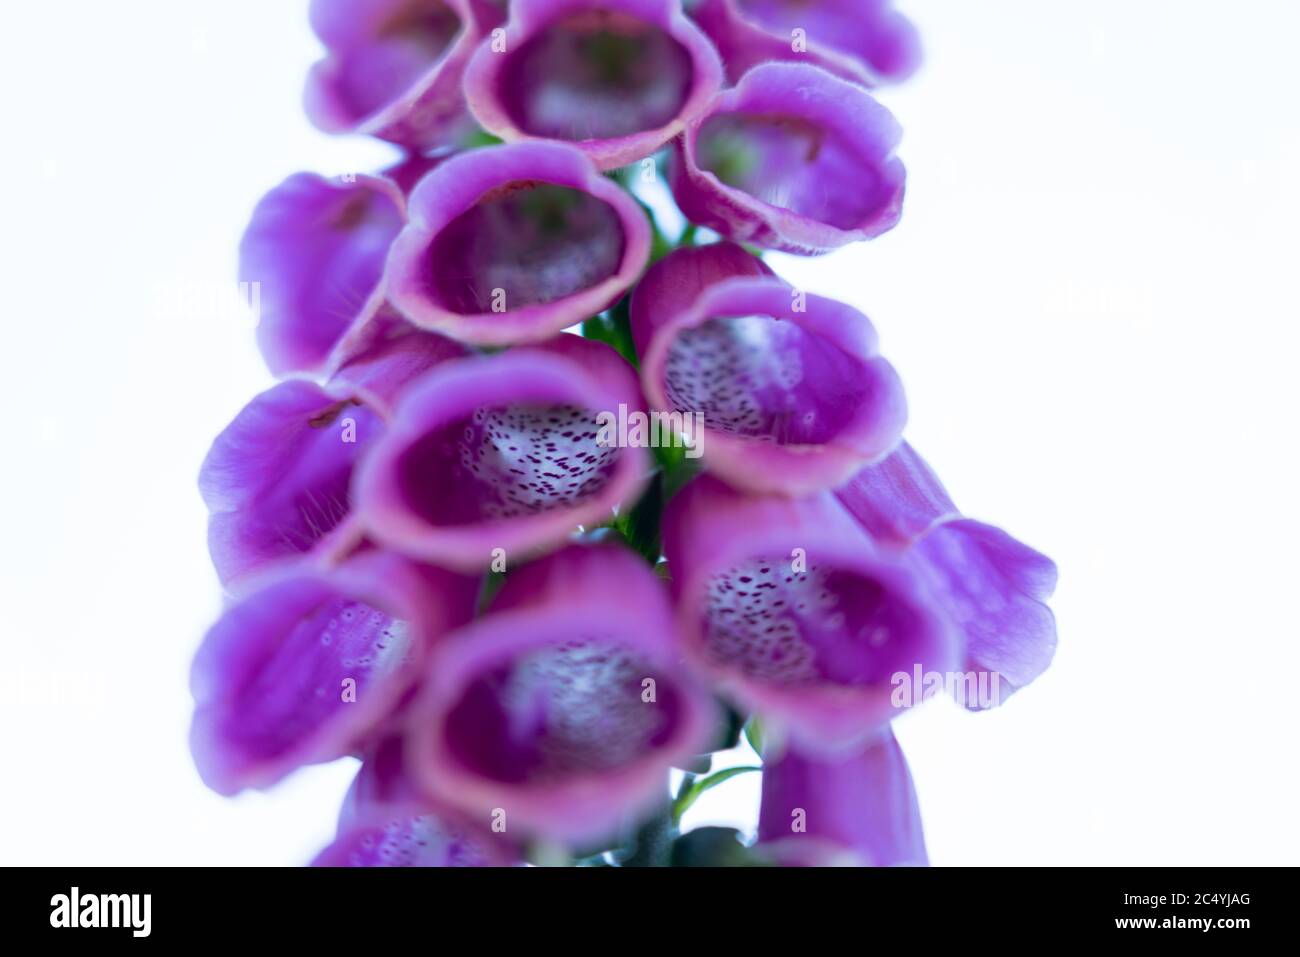 Purple thimble, digitalis purpurea, poisonous plant, Stock Photo